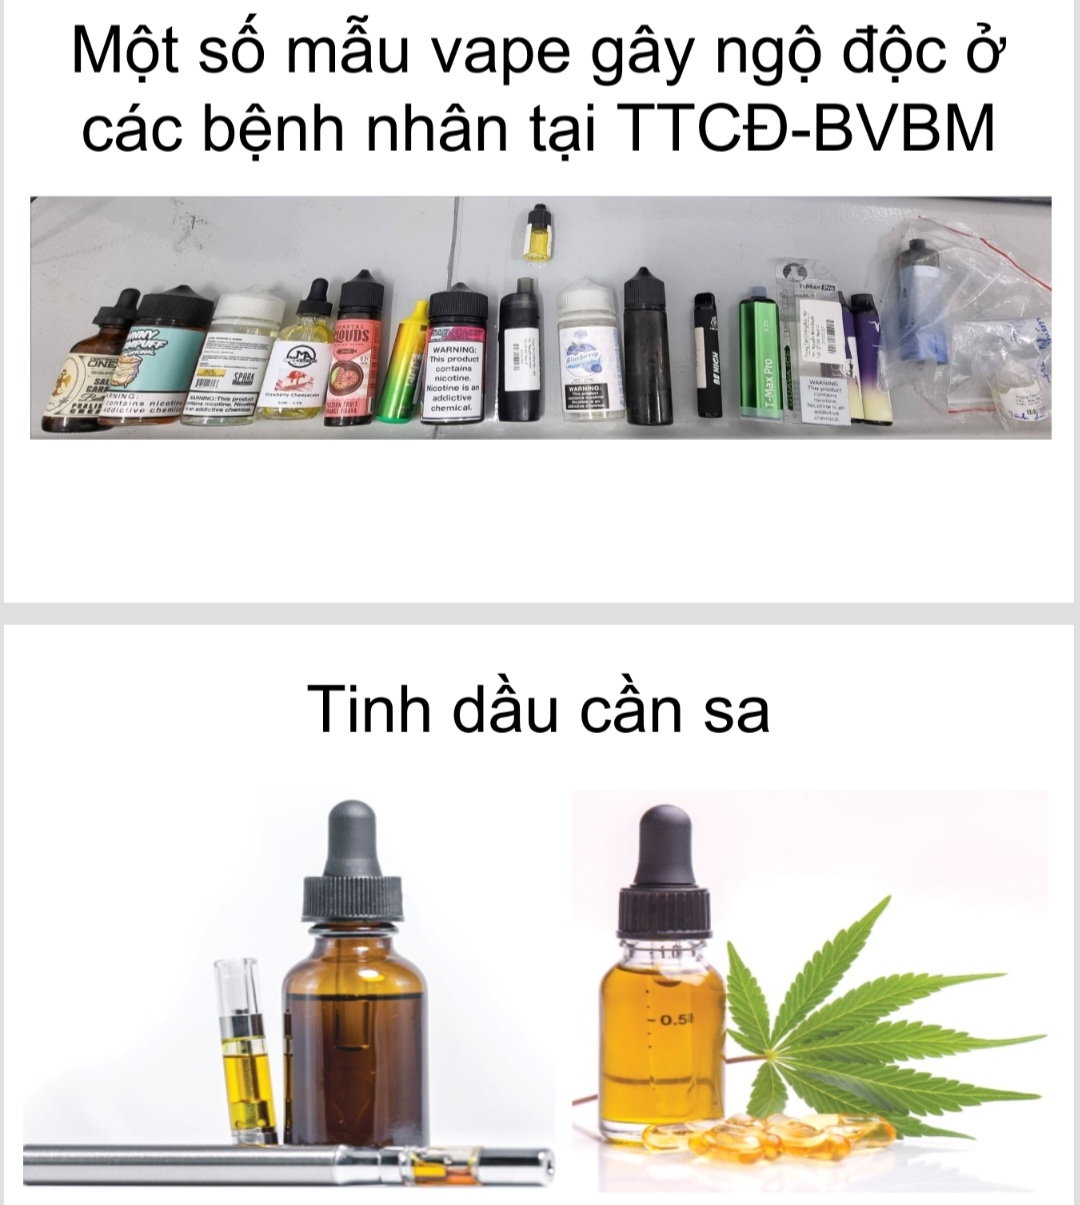 Hơn 120 quốc gia cấm, quản lý chặt thuốc lá điện tử, nung nóng: Chuyên gia y tế đề nghị Việt Nam cấm các sản phẩm này- Ảnh 2.